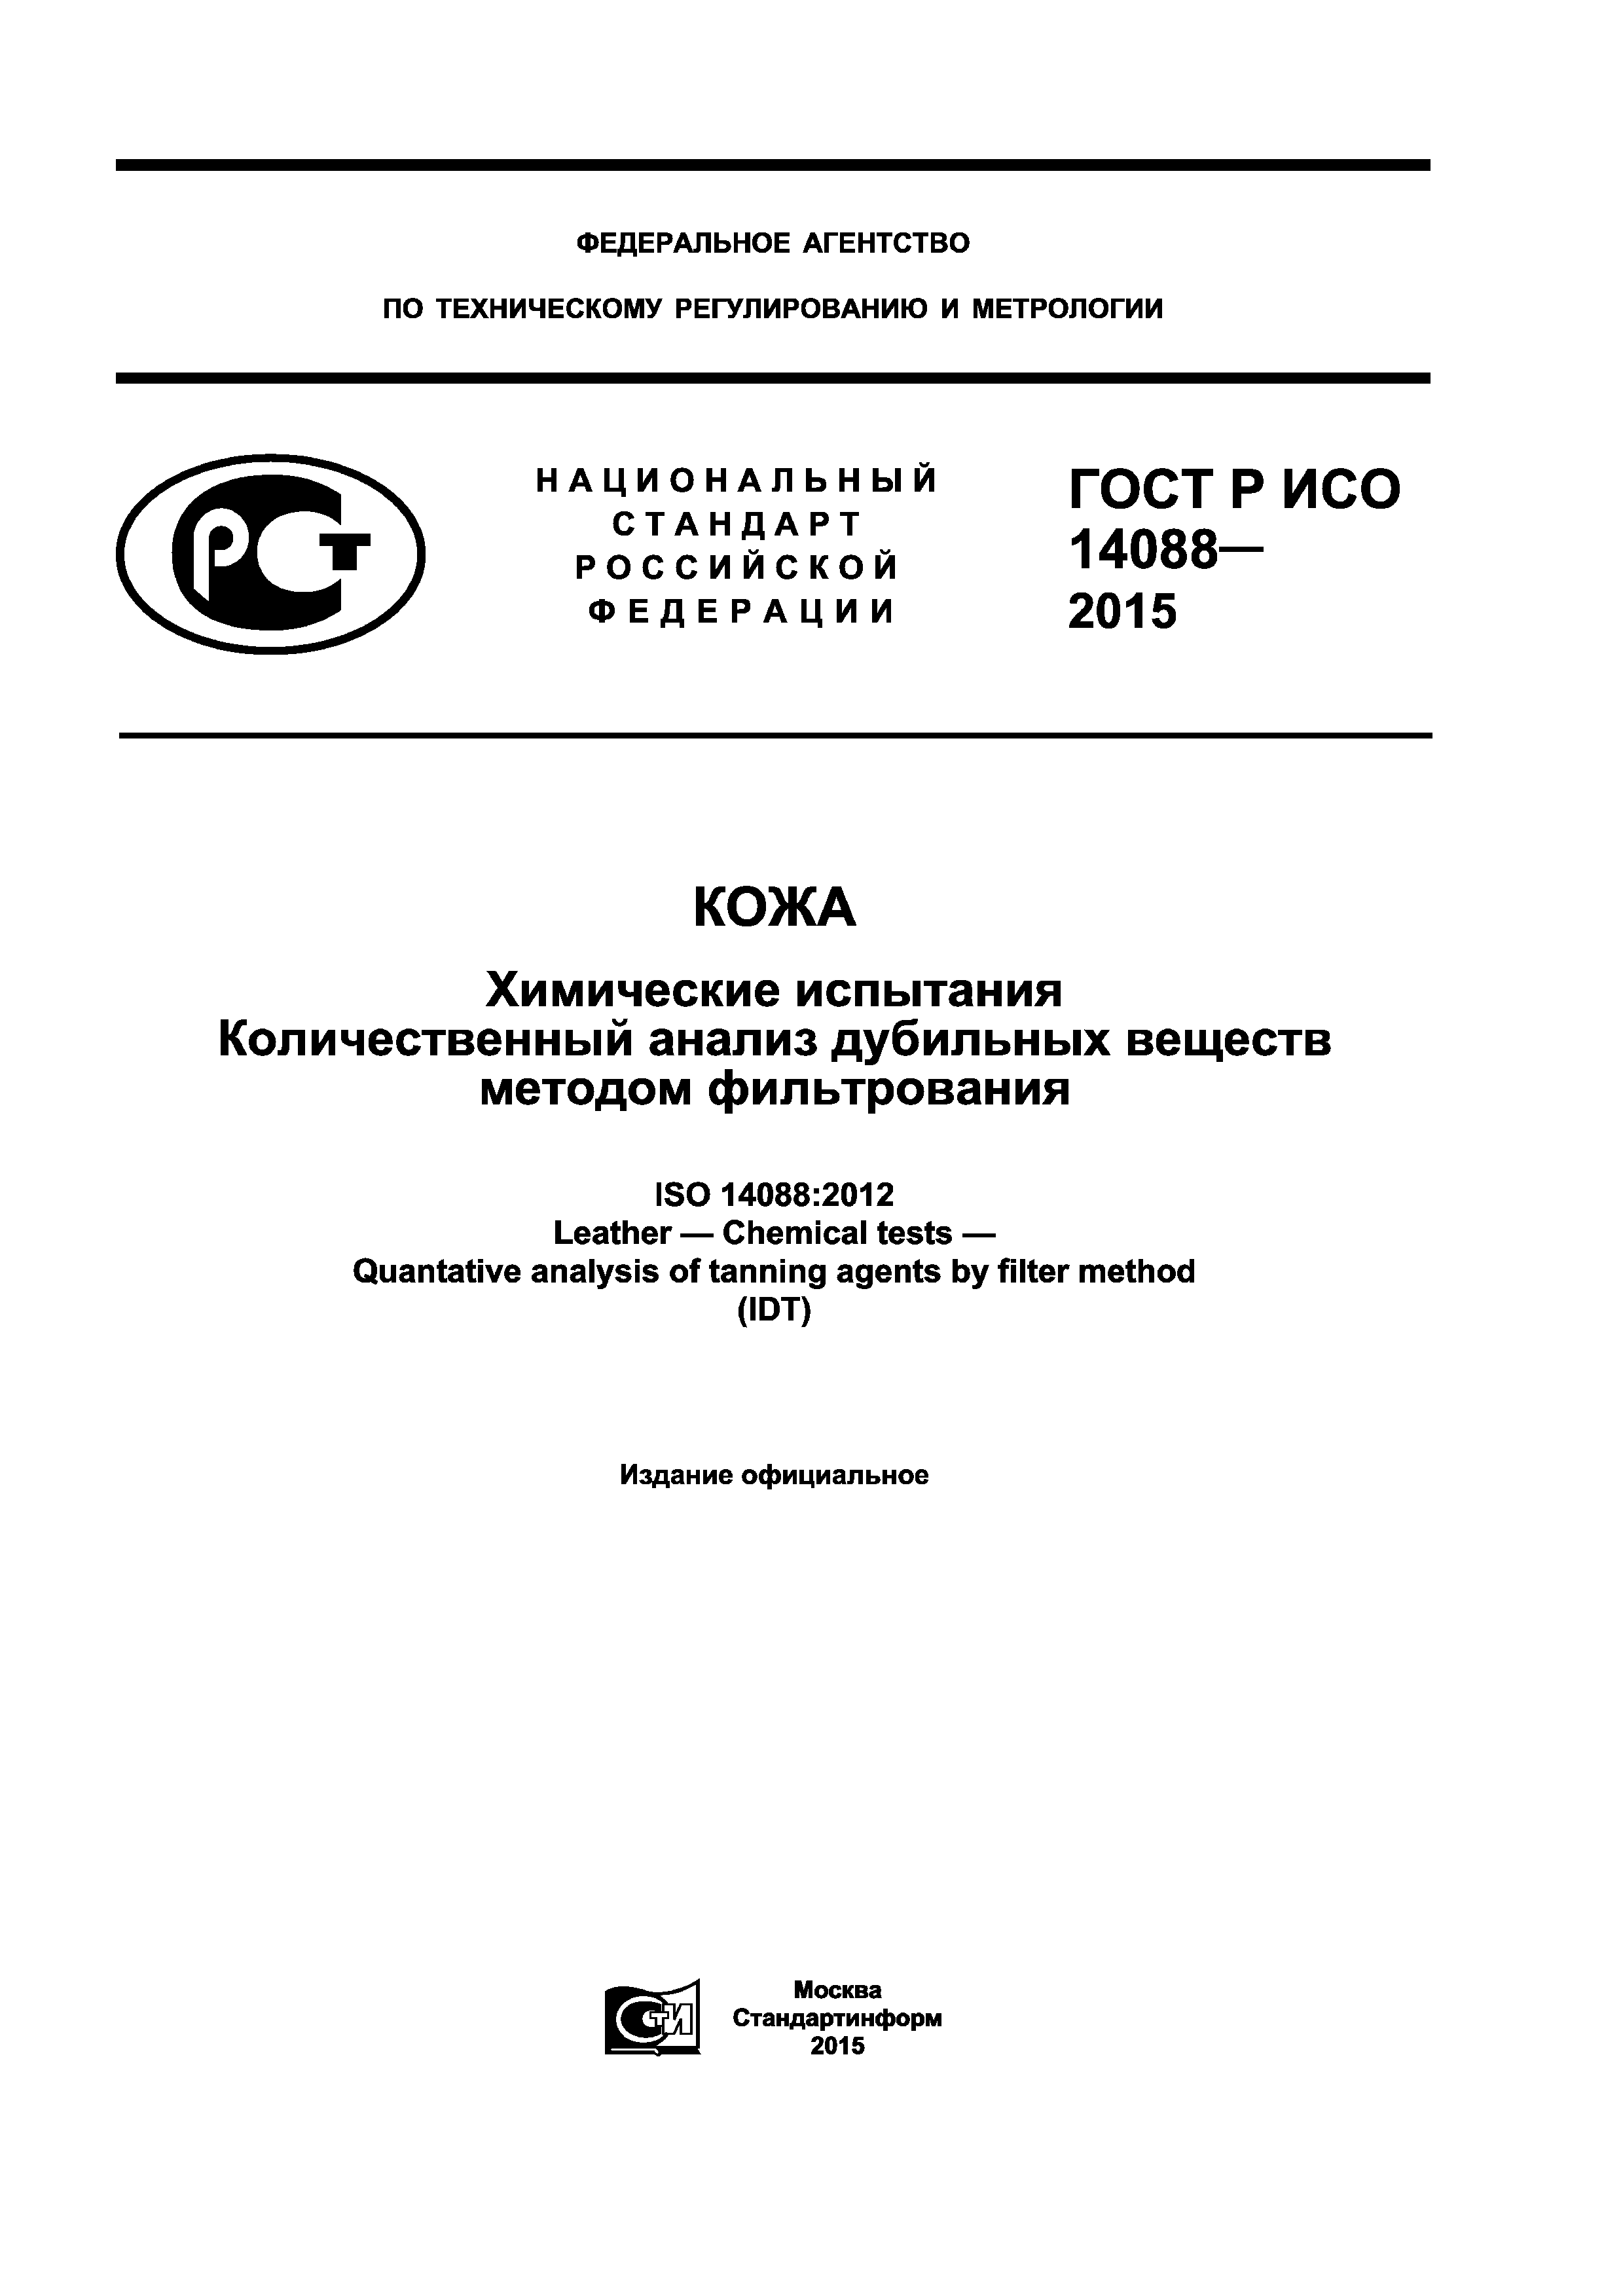 ГОСТ Р ИСО 14088-2015